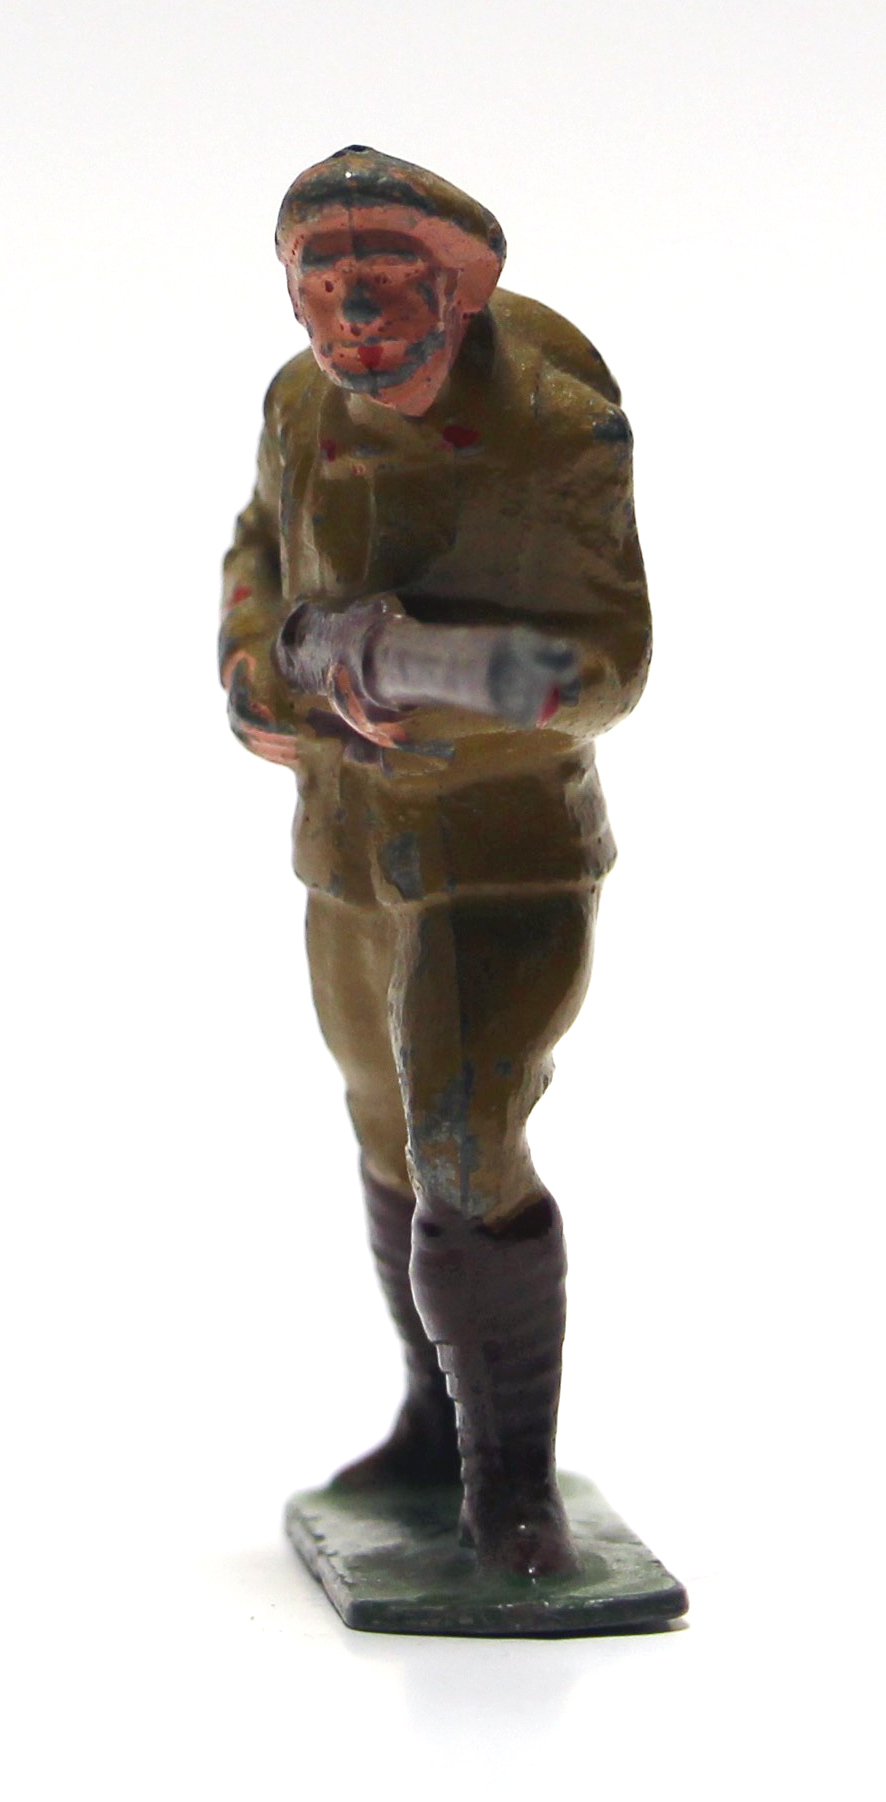 1 Ancienne Figurine Plomb Creux 1940/50 - Infanterie de Forteresse - Guerre 1940 - Armée Française - Peinture d'origine